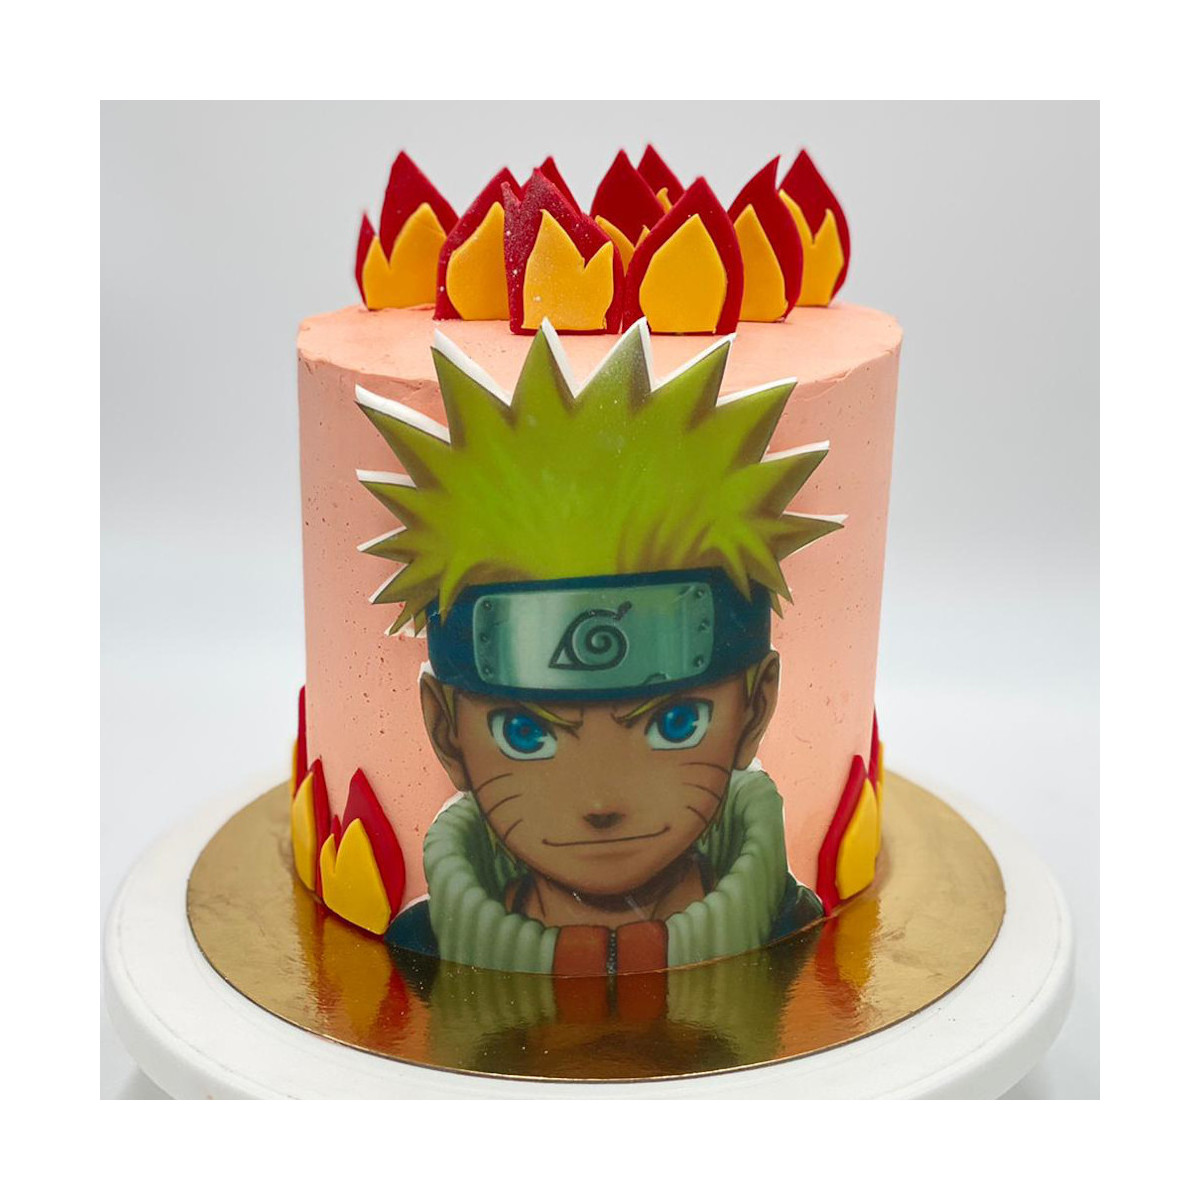 Anniversaire Naruto: déco et gâteau. Idées pour une fête réussie